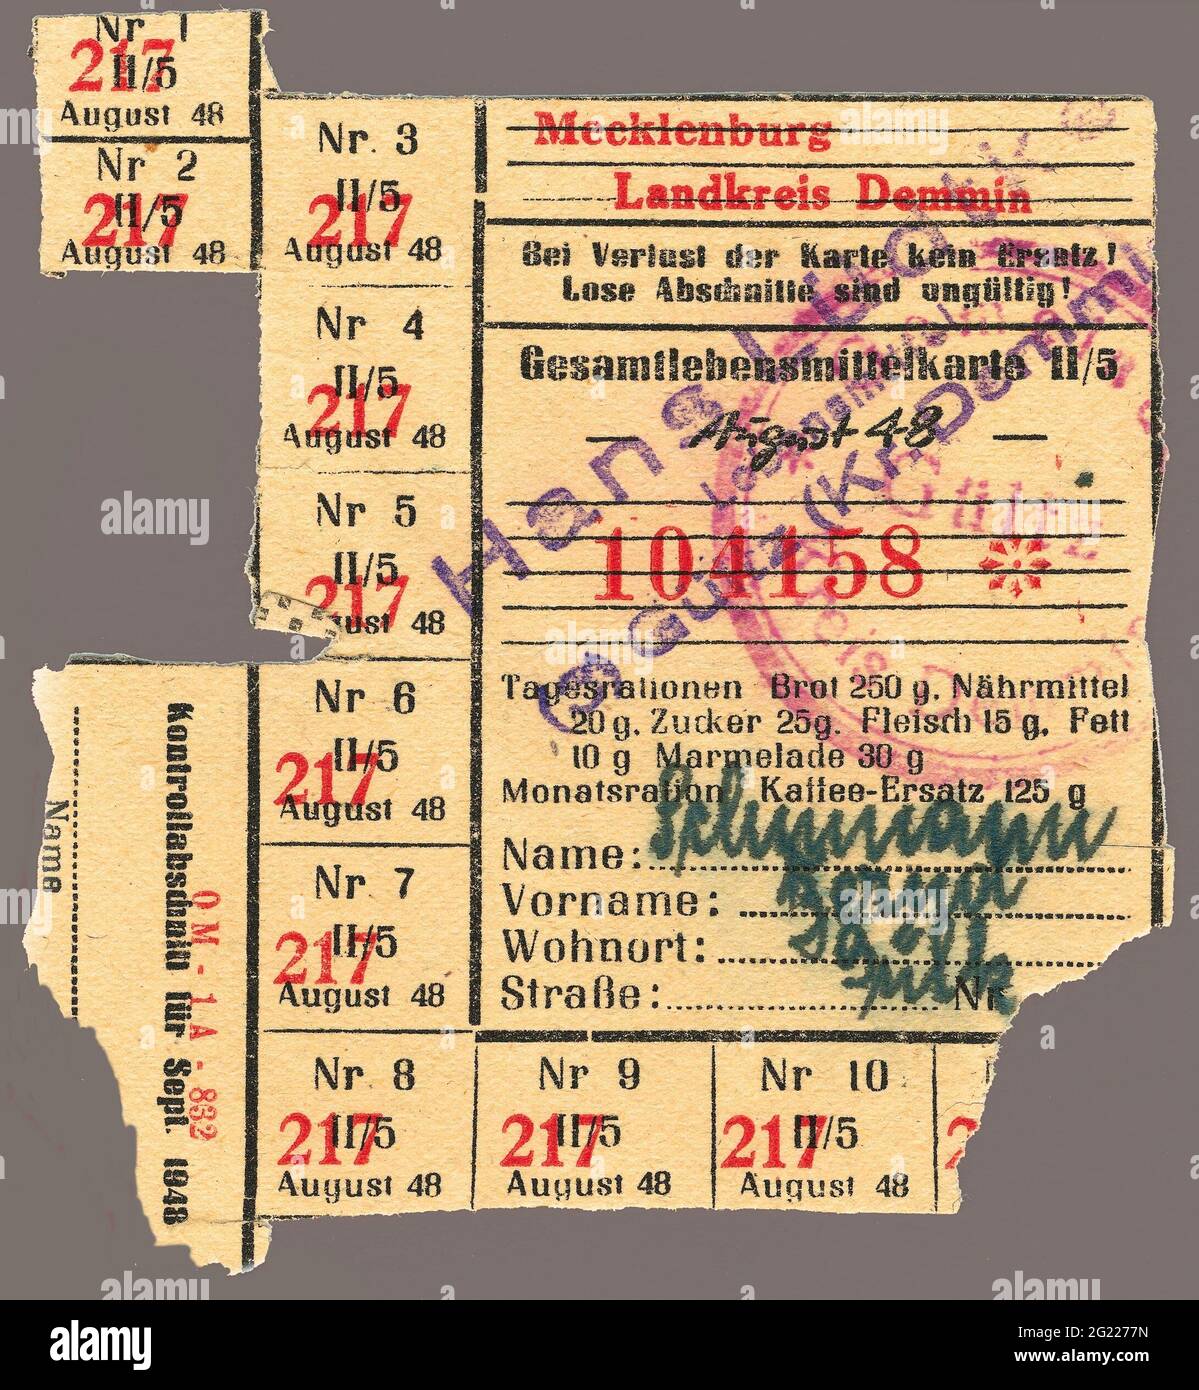 Nachkriegszeit, Rationskarte, Gutschein für Tagesration, Landkreis Demmin, Mecklenburg, ZUSÄTZLICHE-RIGHTS-CLEARANCE-INFO-NOT-AVAILABLE Stockfoto